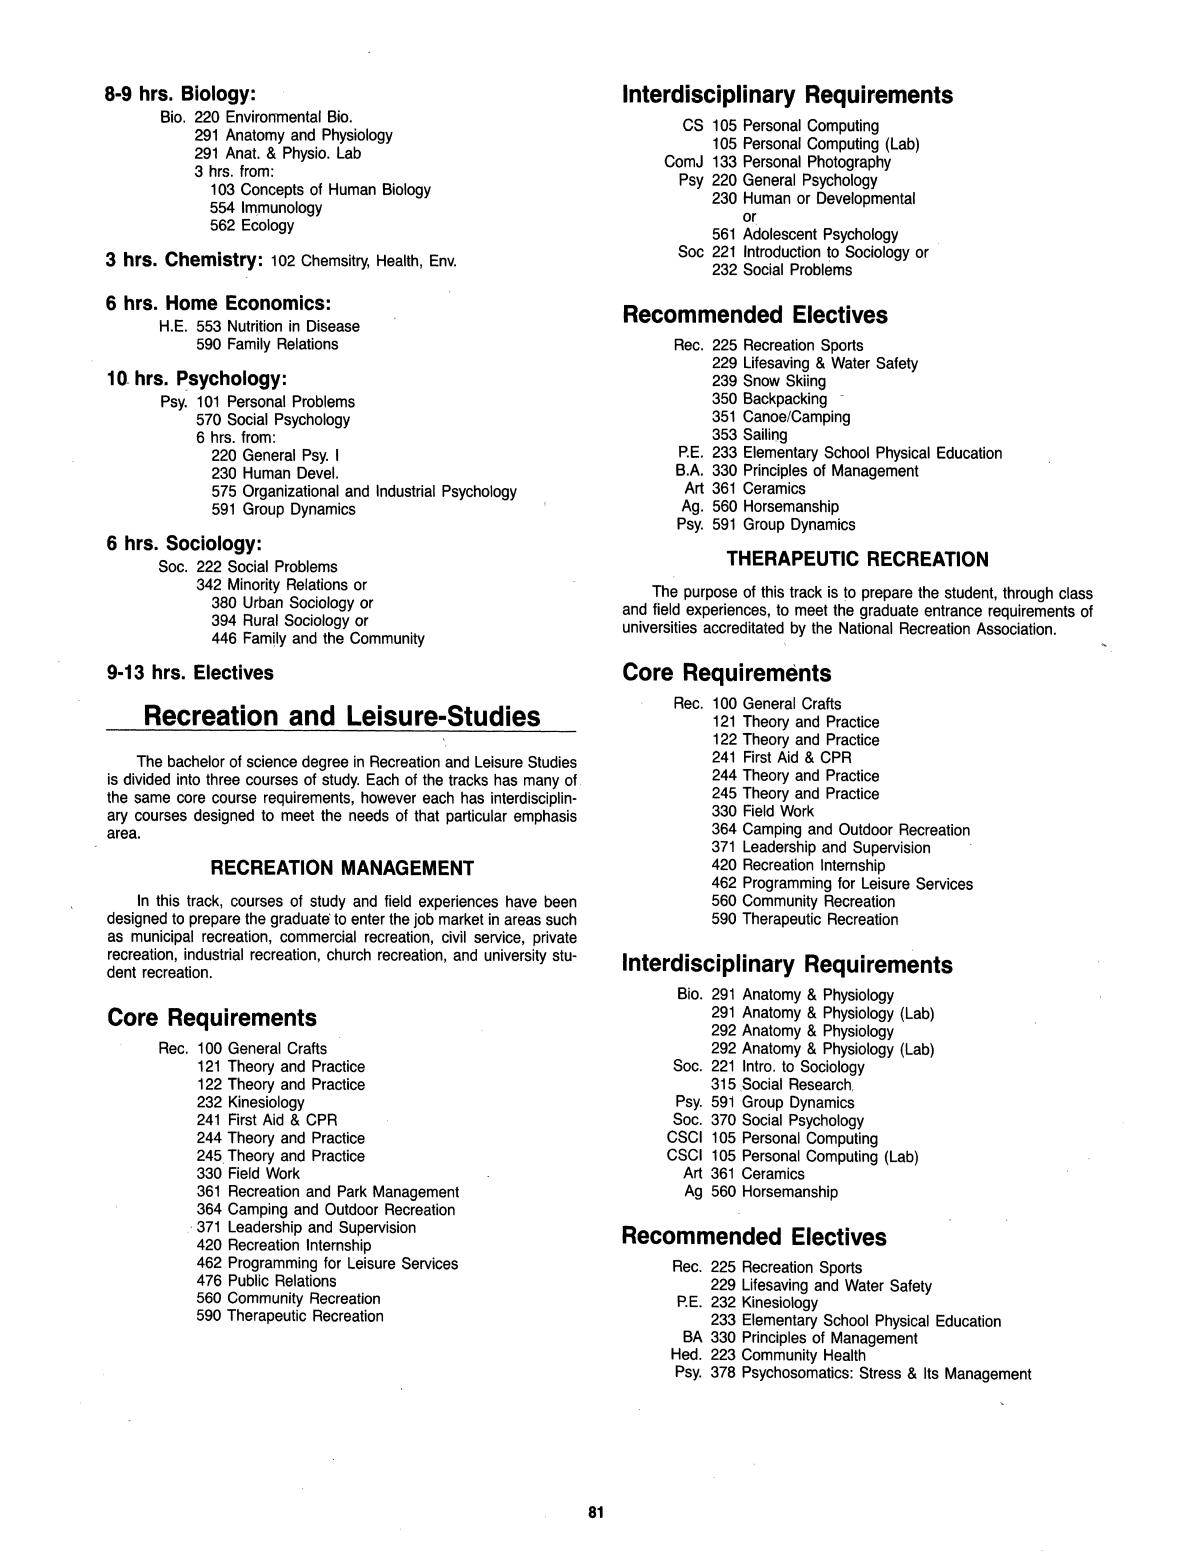 Catalog of Abilene Christian University, 1985-1986
                                                
                                                    81
                                                